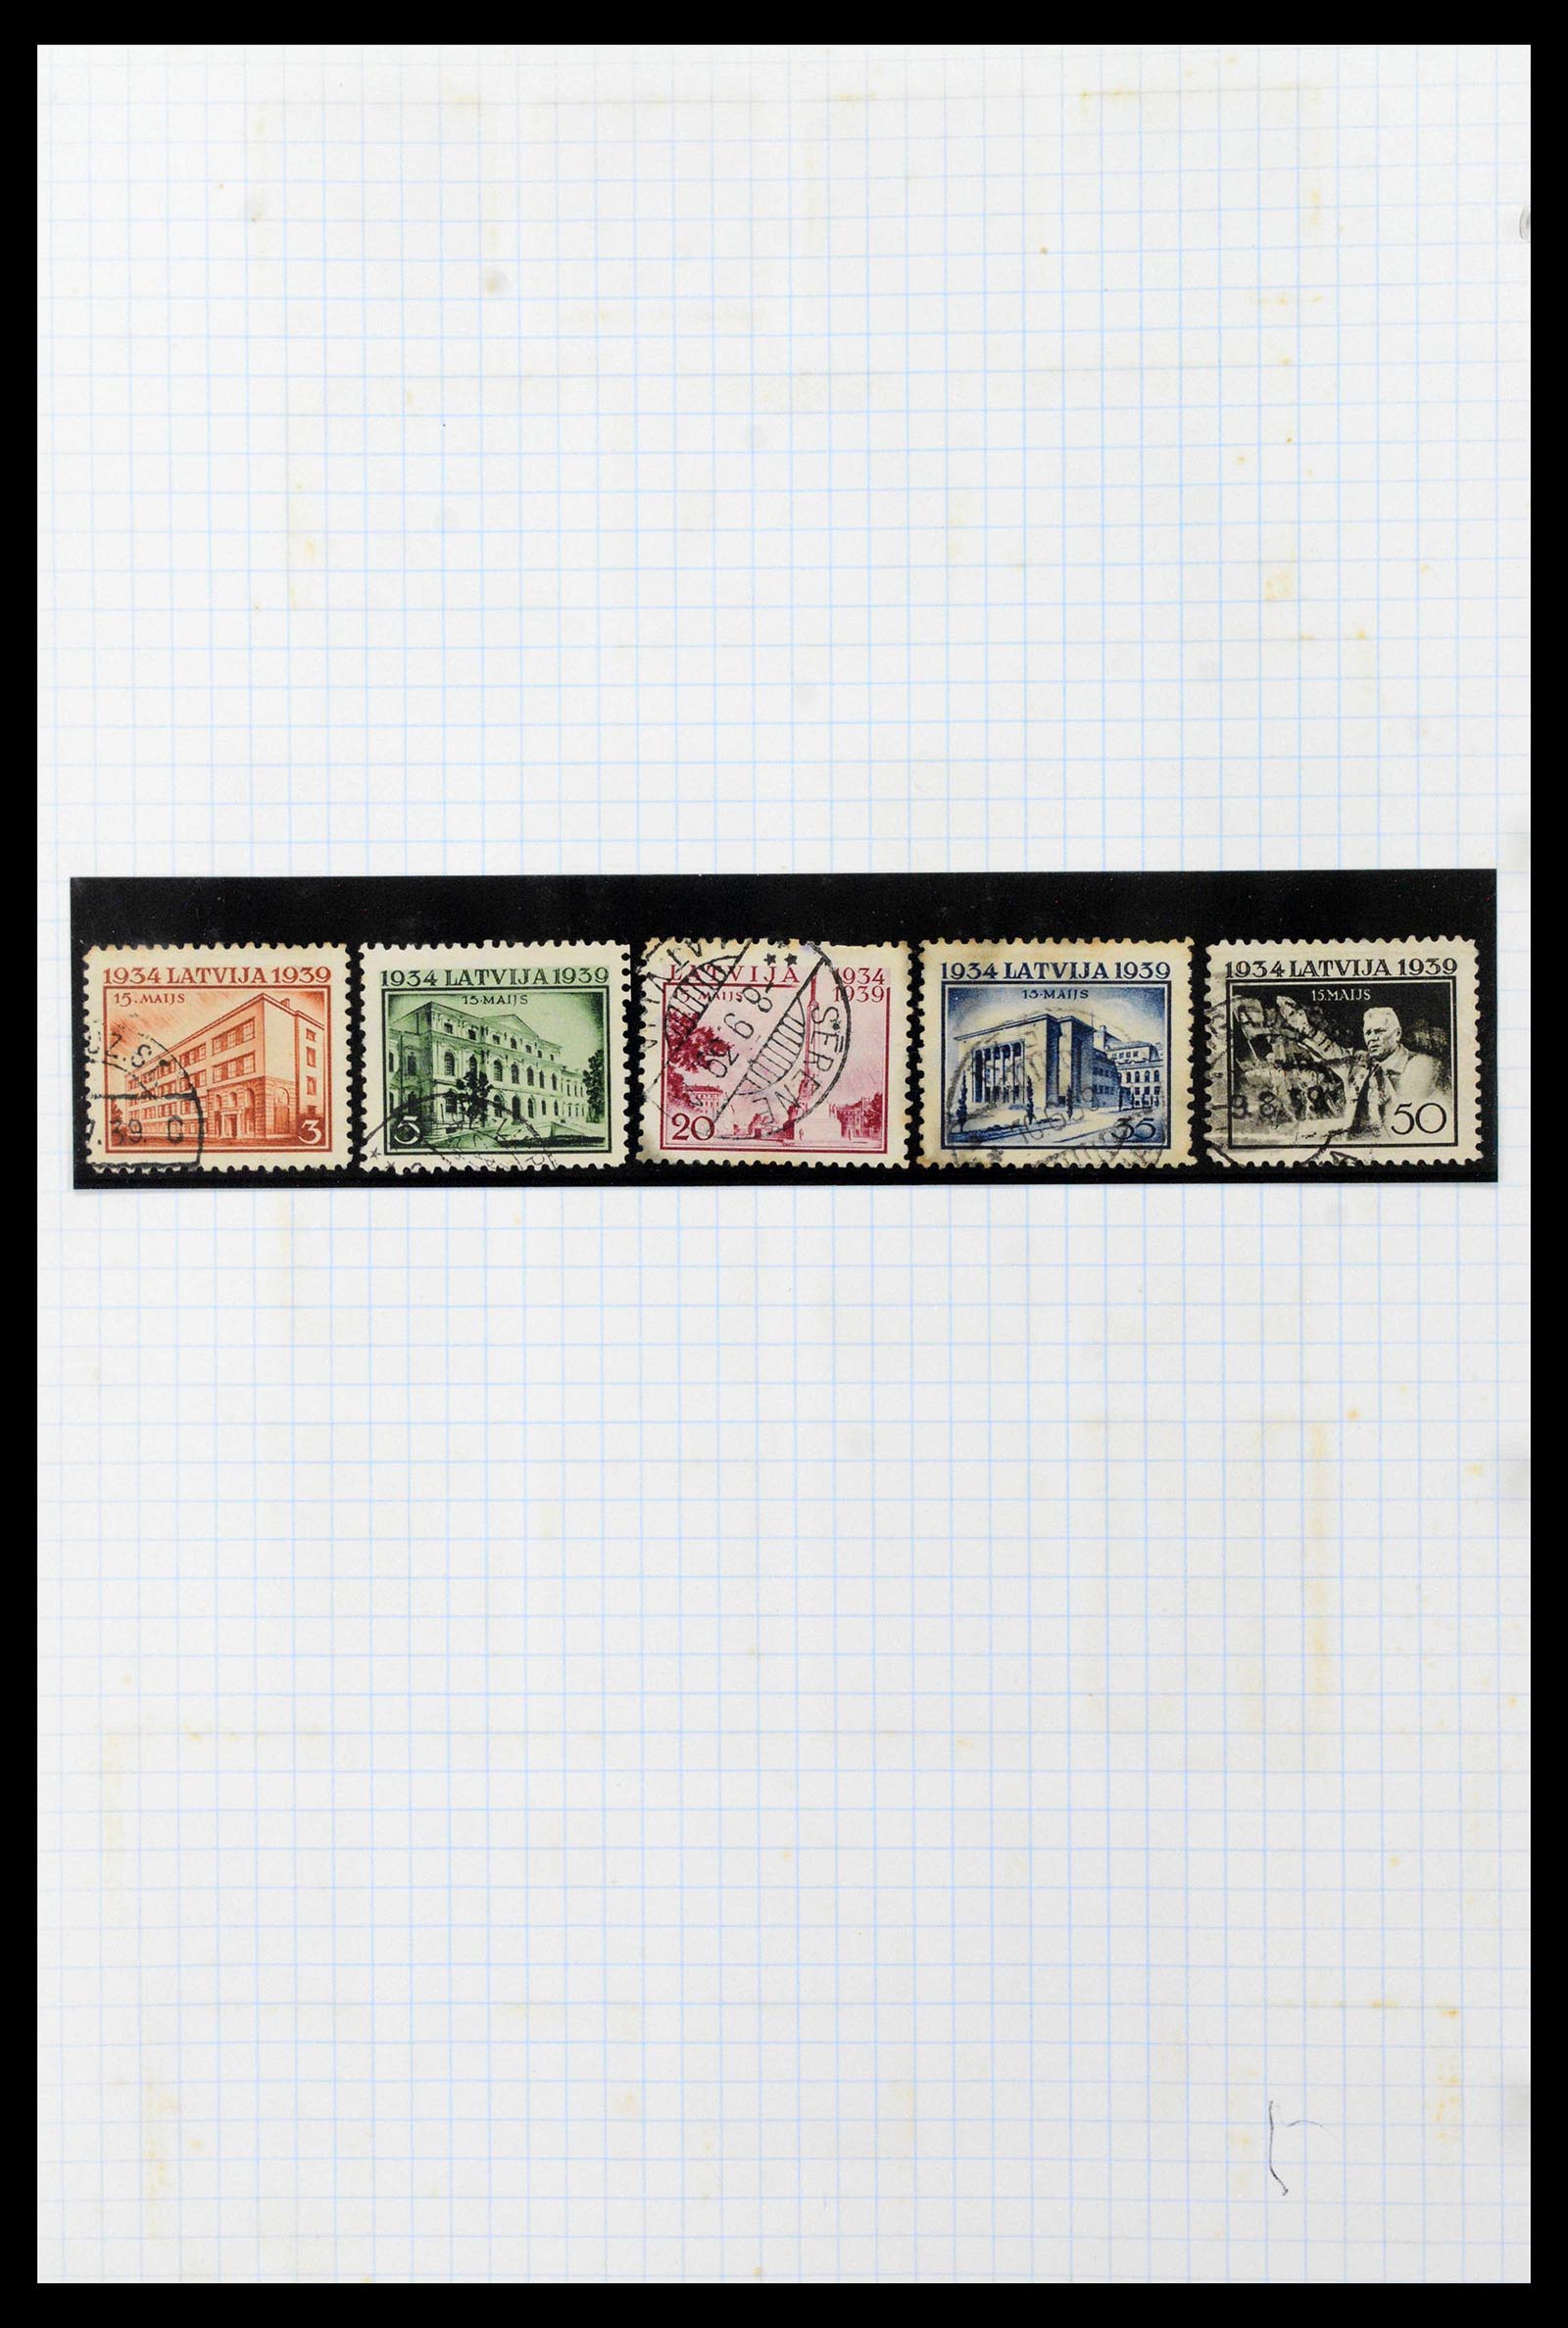 39238 0021 - Postzegelverzameling 39238 Letland 1919-2008.